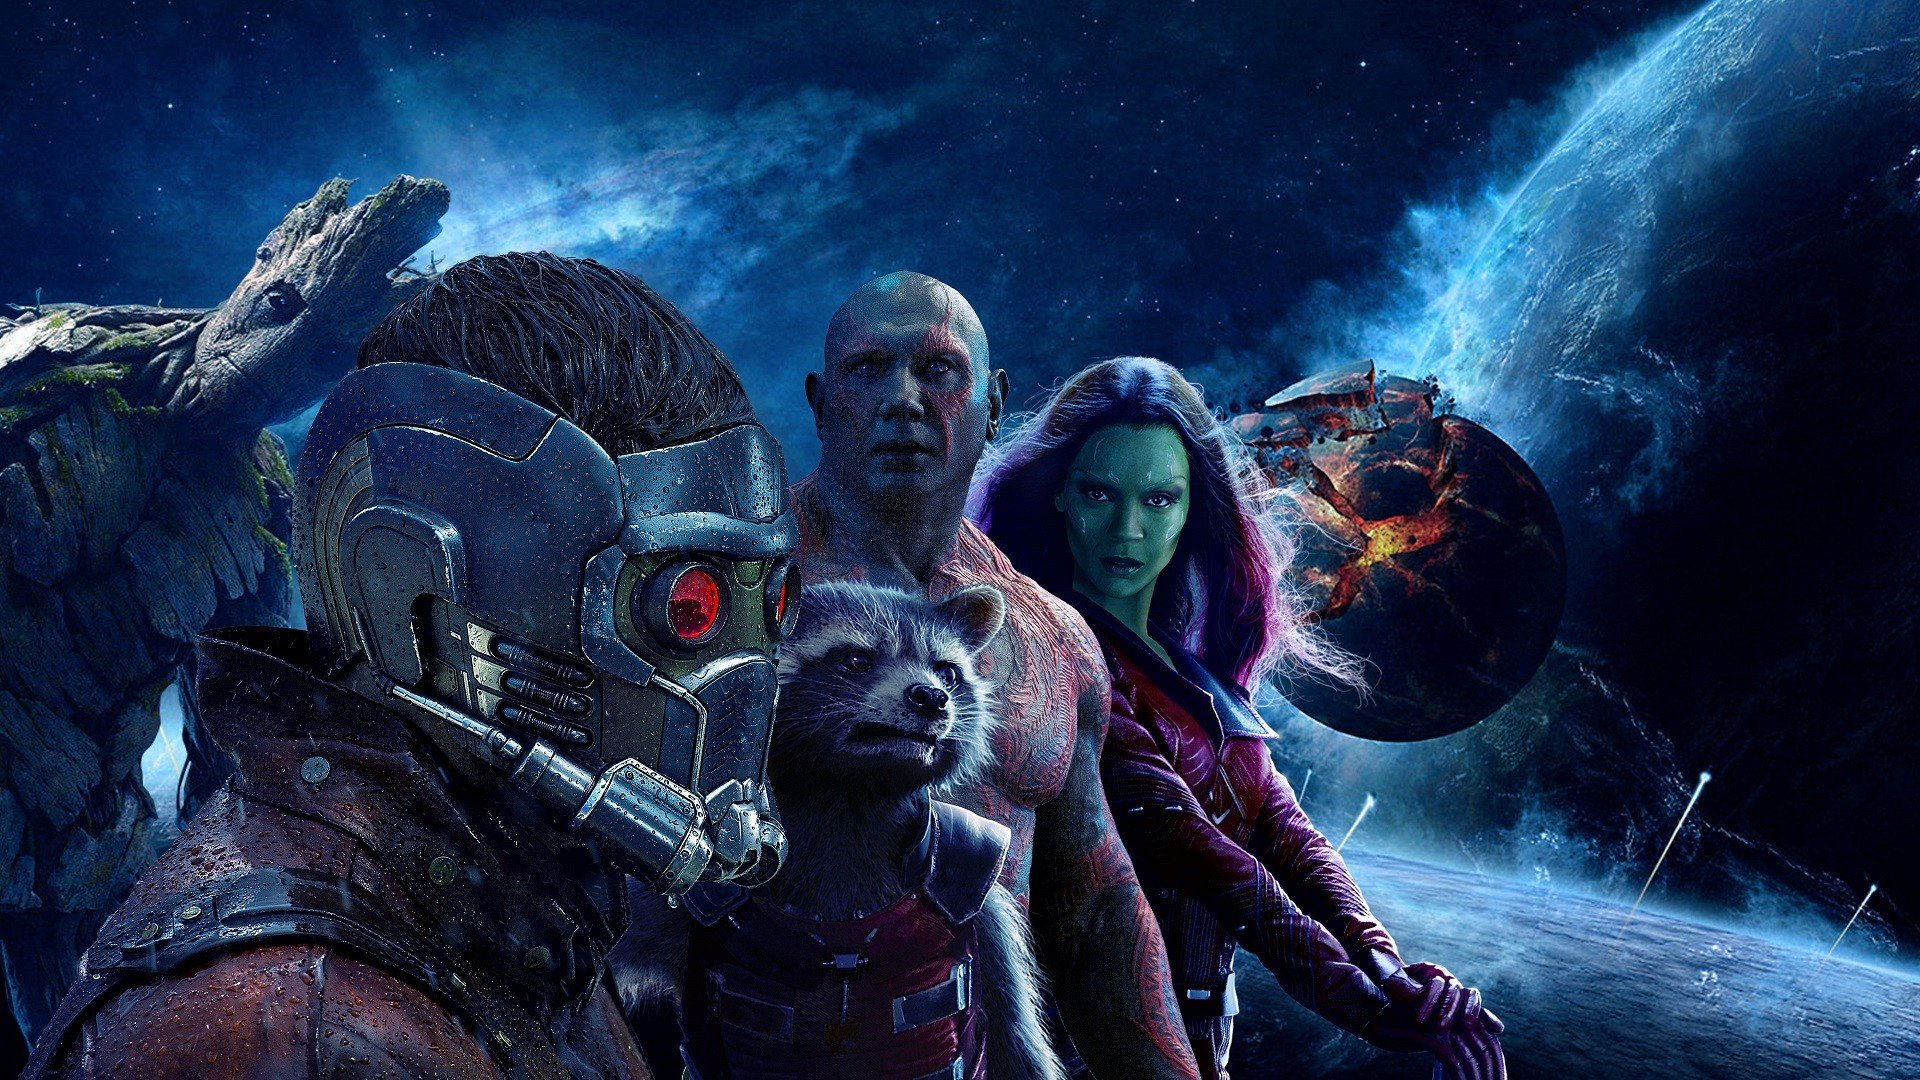 Groot, Drax the Destroyer, Star Lord, Rocket Raccoon, Gamora, Zoe Saldana, Guardians of the Galaxy, Guardians of the Galaxy Vol. 2, Movies, Space, Planet Wallpaper